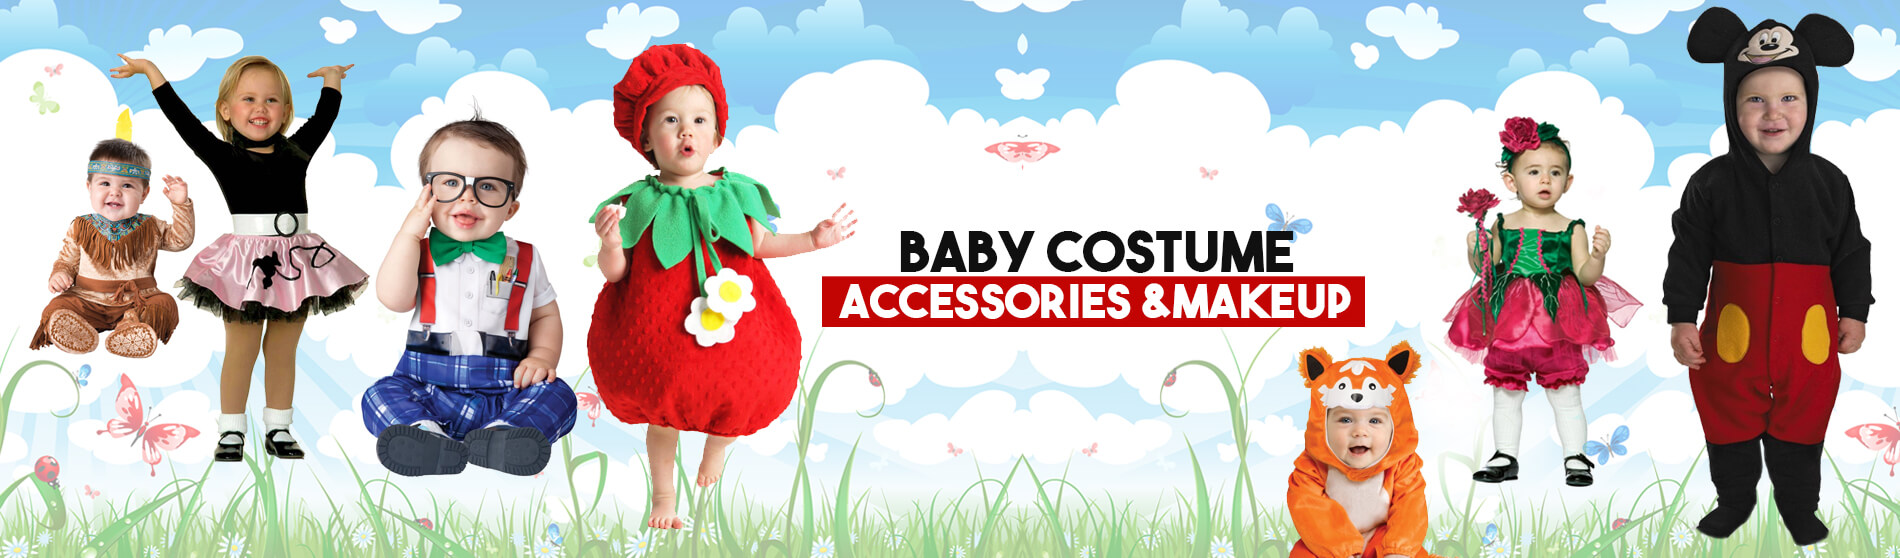 Glendale Halloween : Baby-Costume-Accessories-Makeup